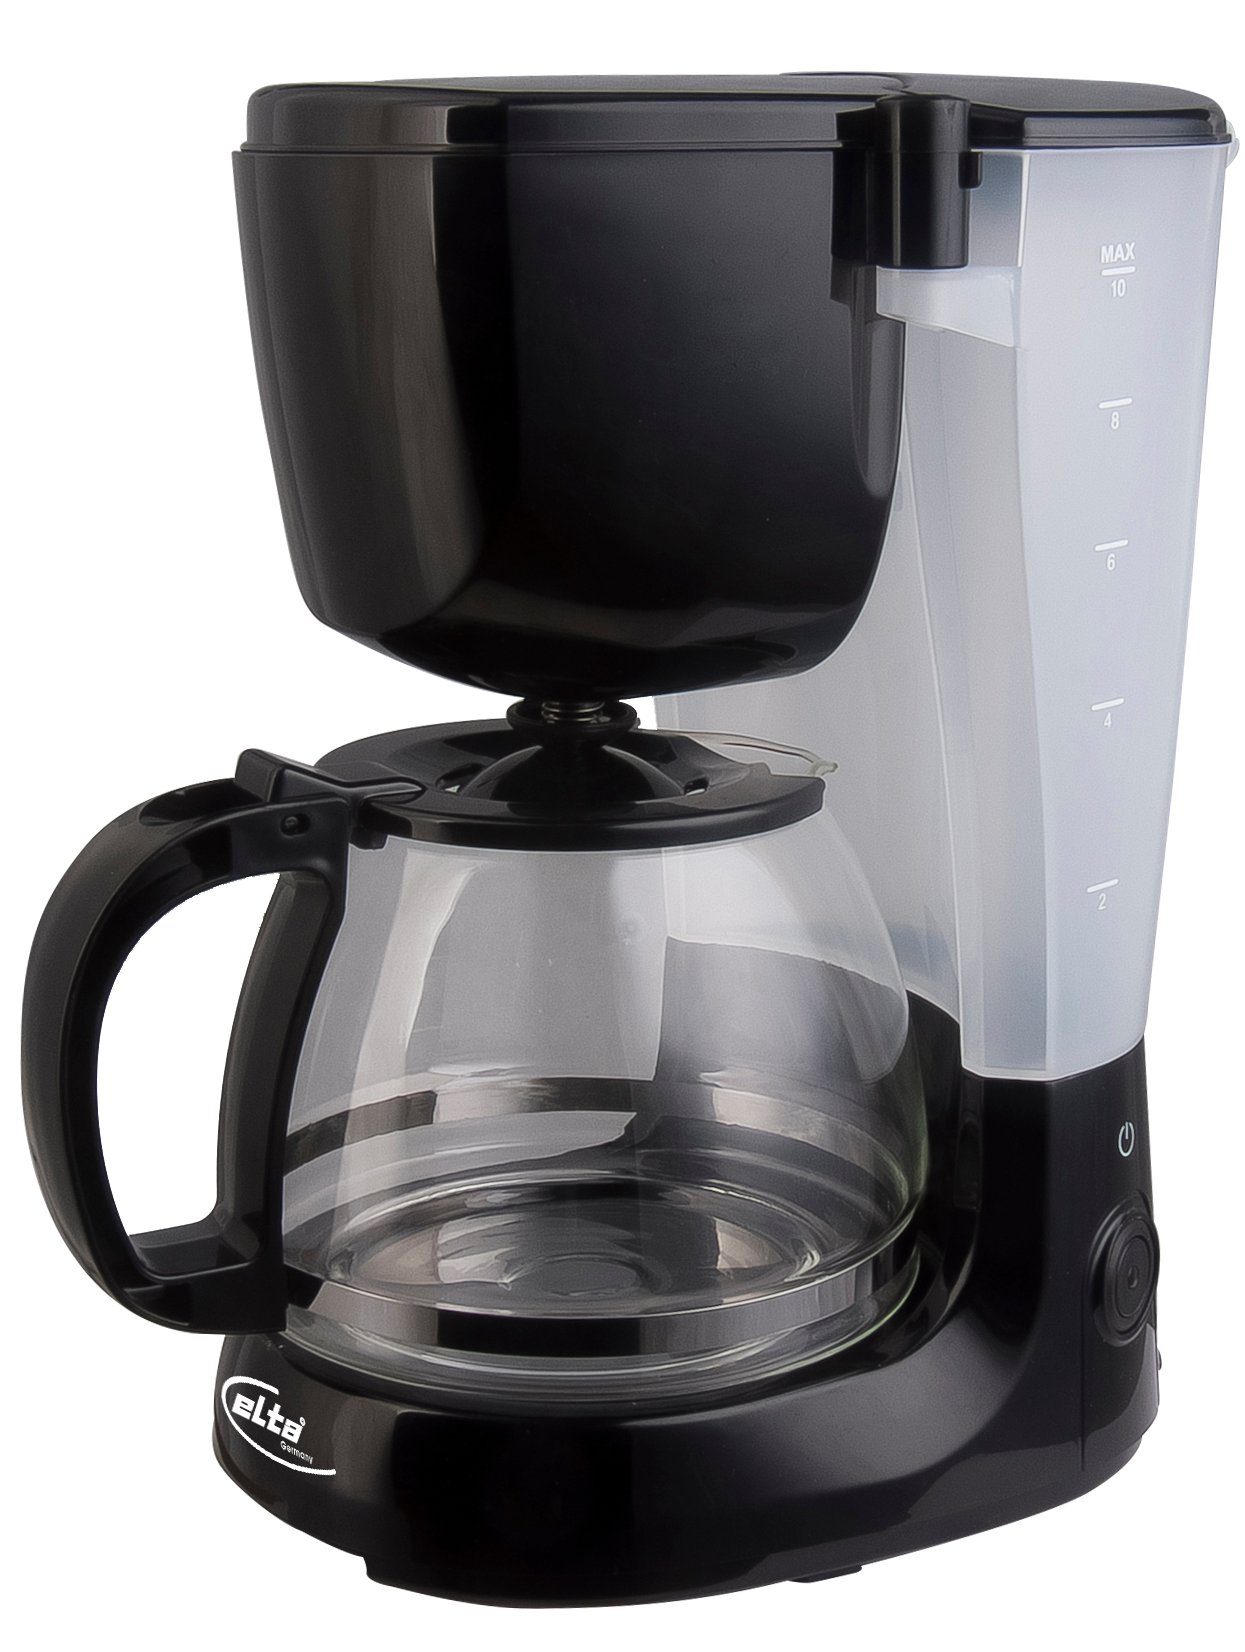 Filterkaffeemaschine, schwarz Glas Kaffee Edelstahl Filterkaffee Maschine Kanne Kaffeemaschine Elta